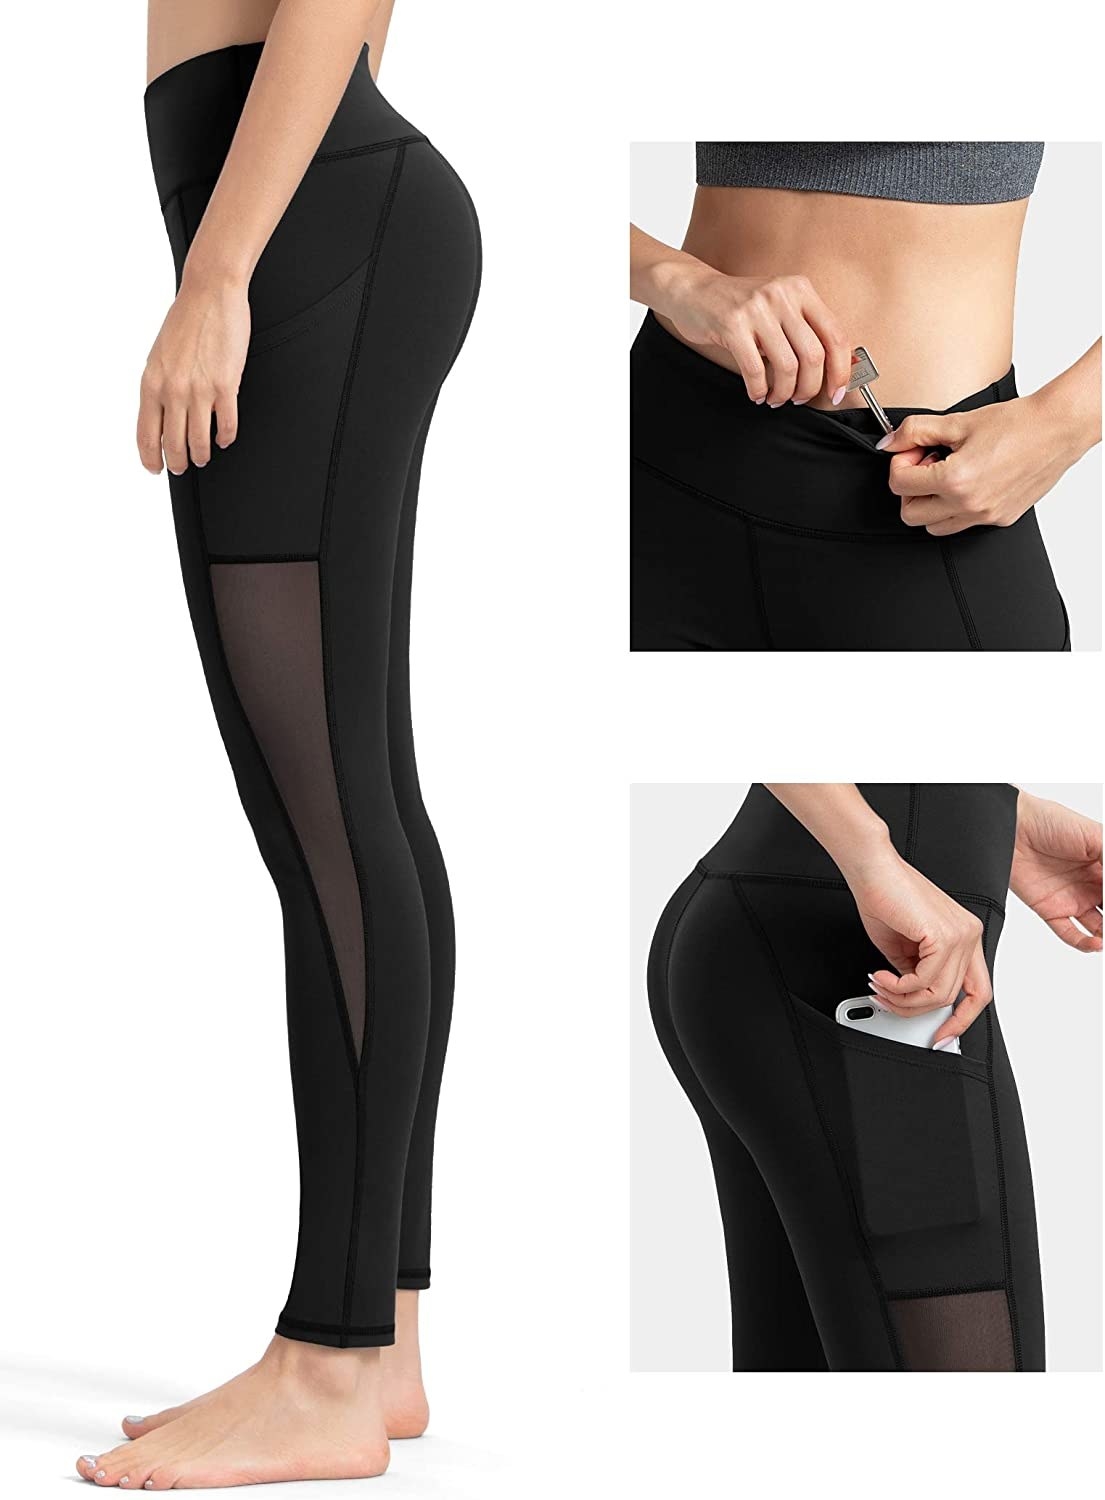 S-XL Women Gradient Flare Yoga Pant High Waist Wide Leg Squat Proof Gym  Legging Workout Sports Dance Trousers Active Wear Pants